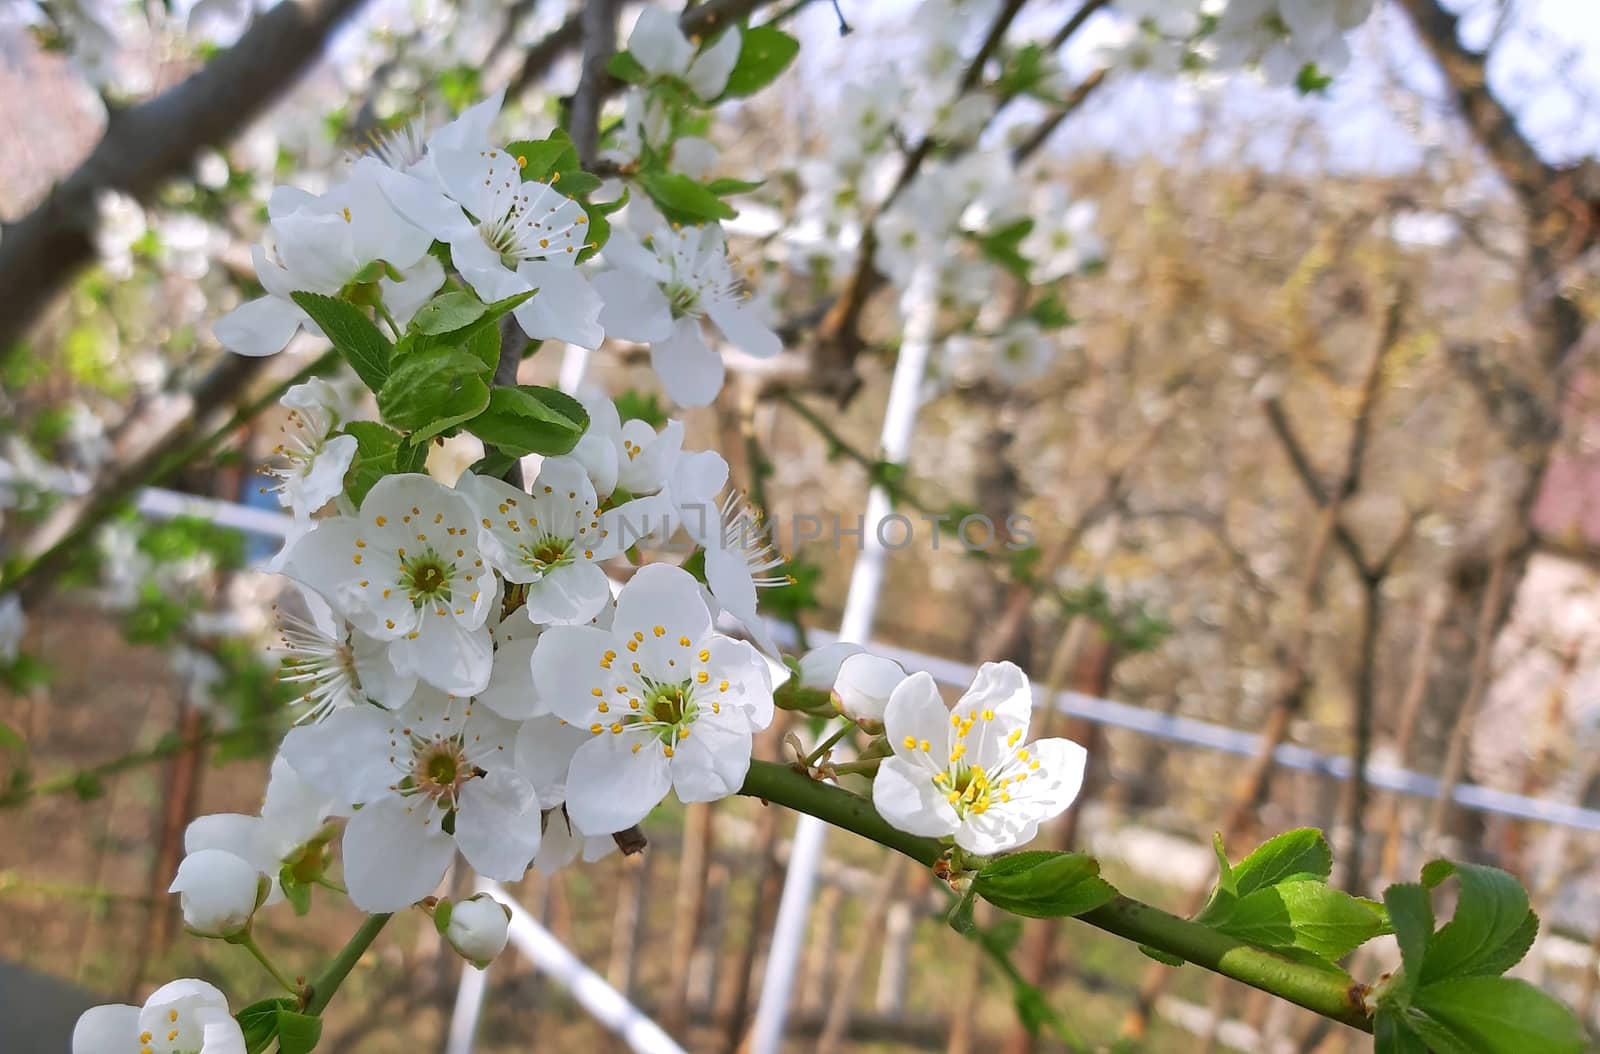 Prunus tree blooming in the spring beautiful white petals.